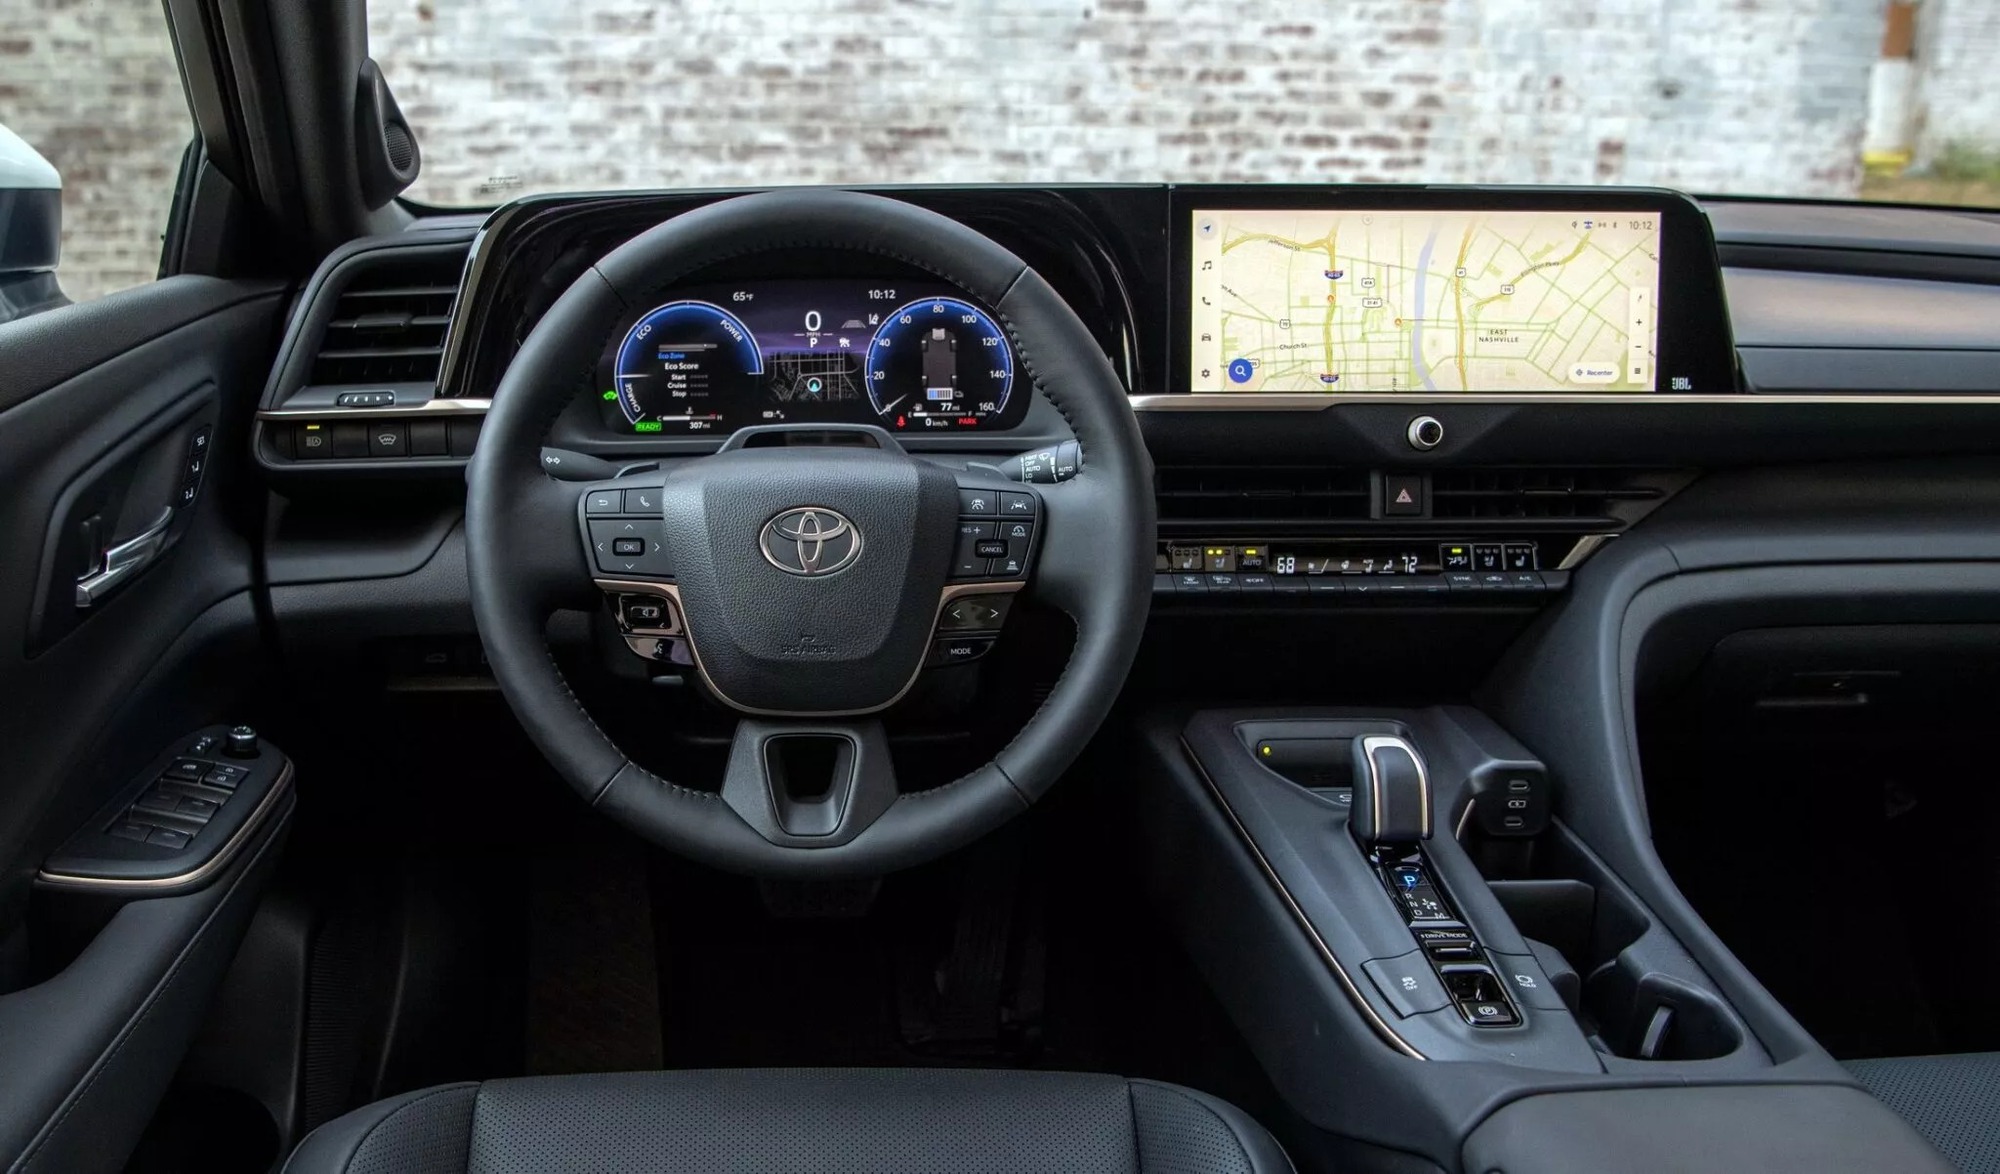 Xem trước thiết kế Toyota Camry thế hệ mới: Lột xác với ngoại hình trẻ trung hơn - Ảnh 2.